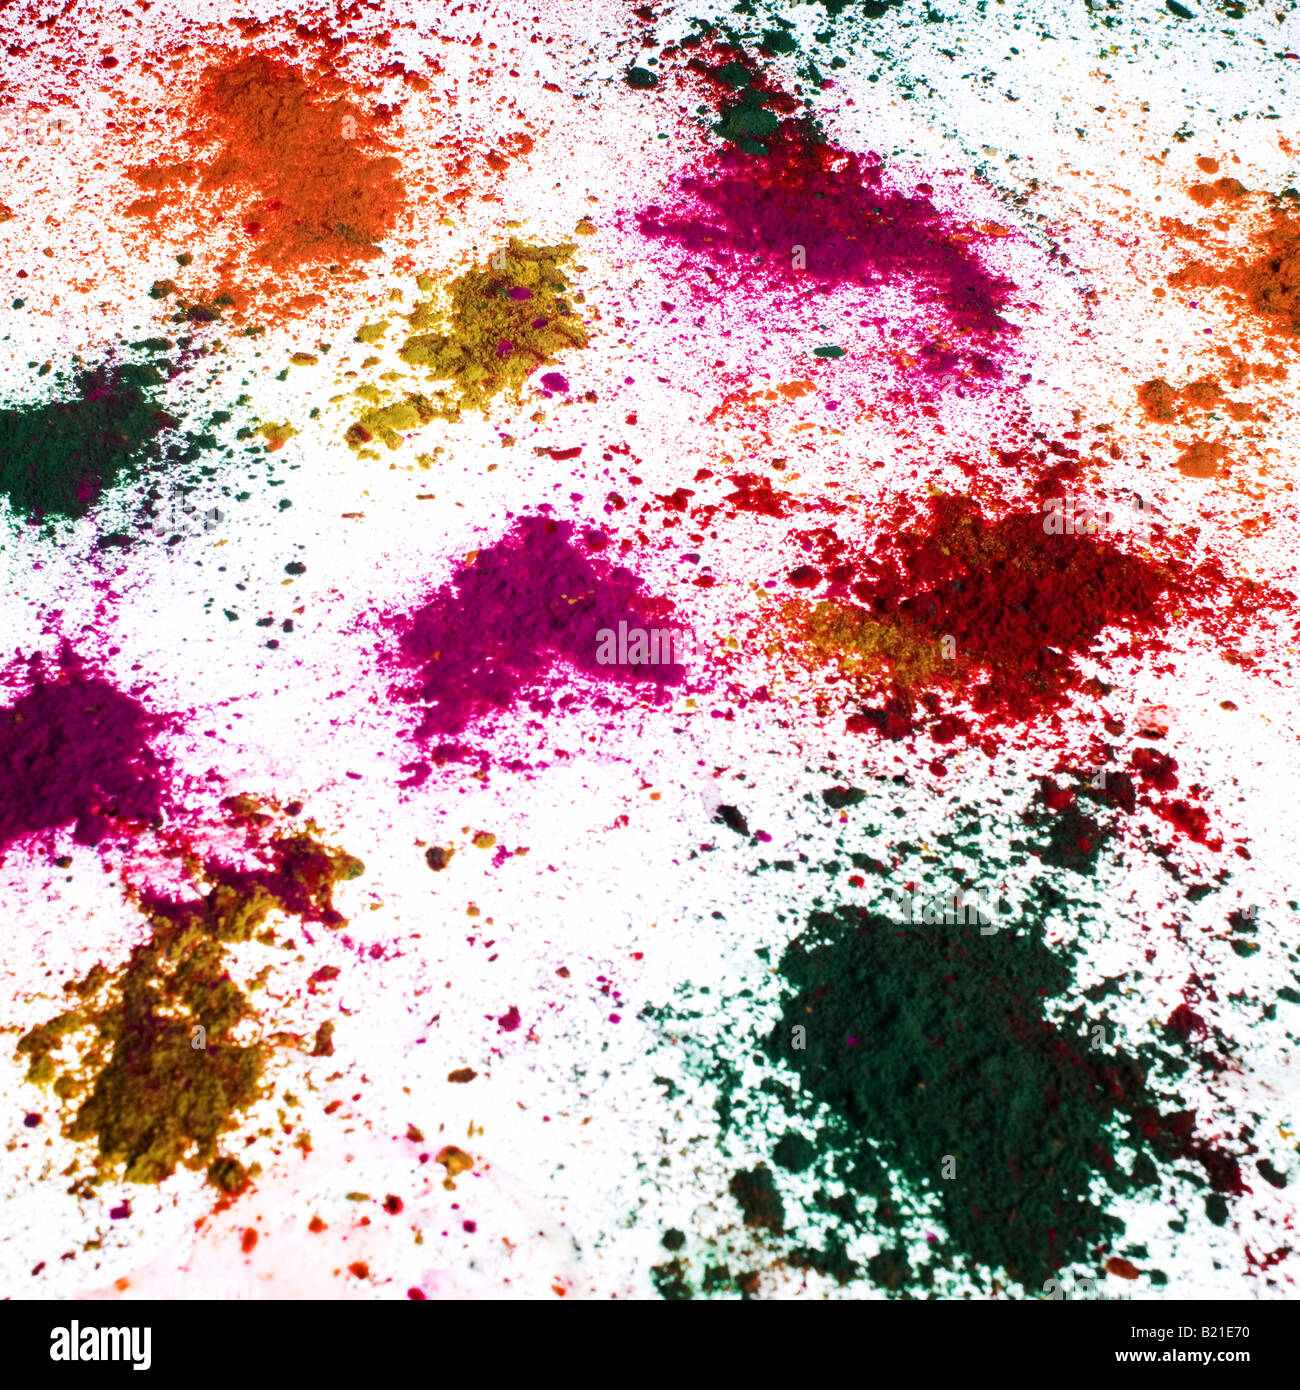 Elevato angolo di visualizzazione multi-colore di vernice in polvere sparsa sul pavimento Foto Stock